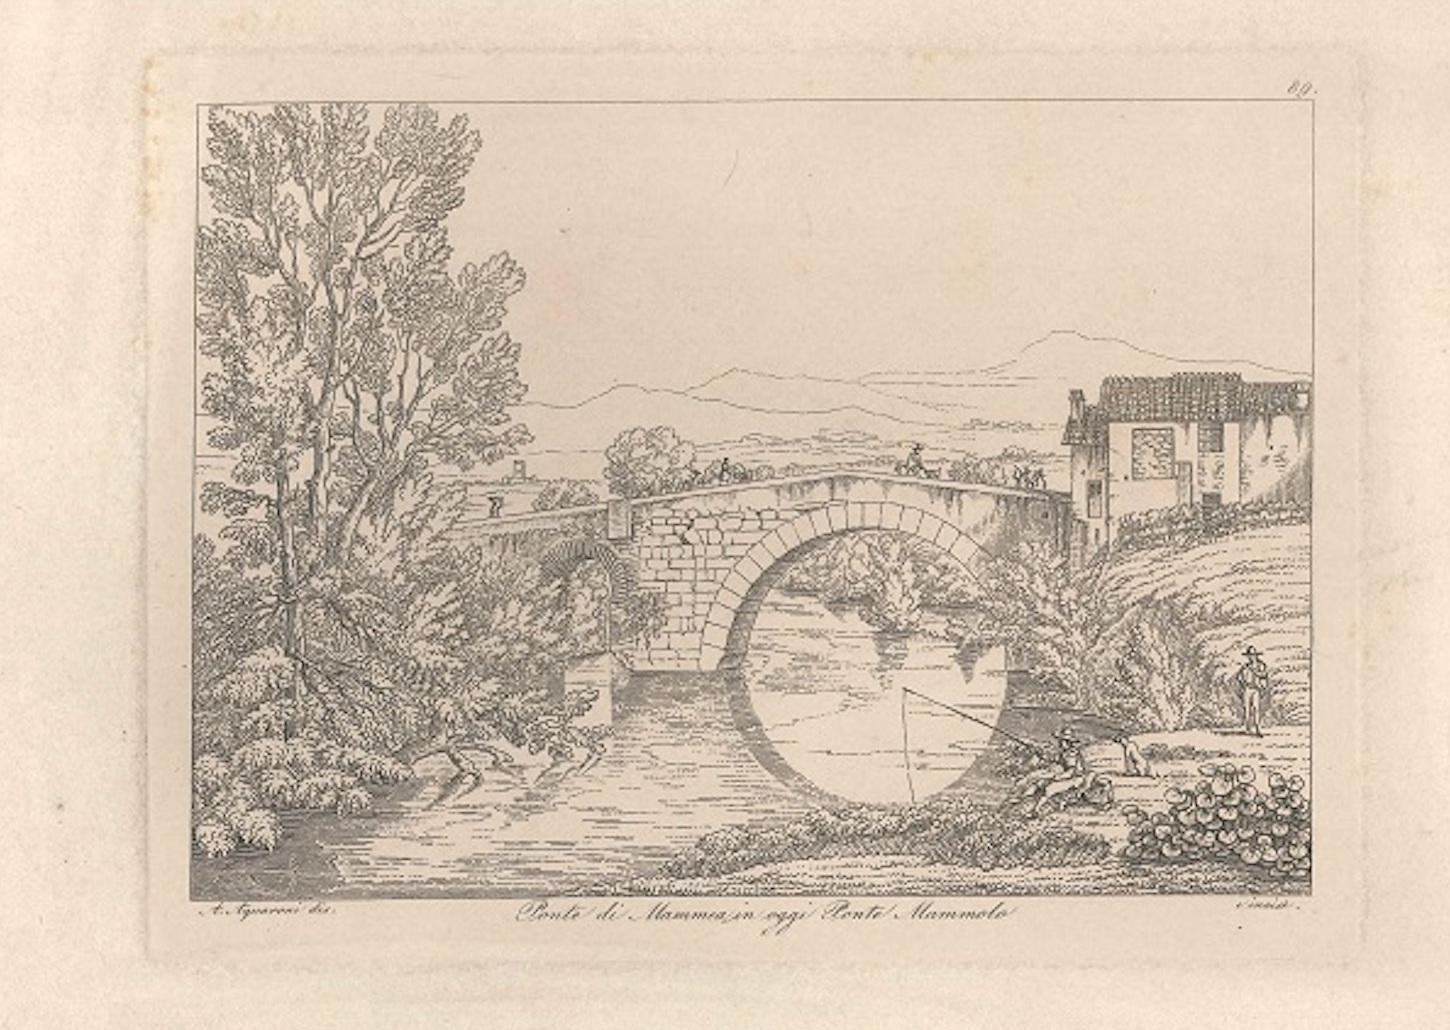 Antonio Acquaroni Figurative Print - Ponte di Mammea (today Ponte Mammolo) - Original Etching by A. Acquaroni - 1836